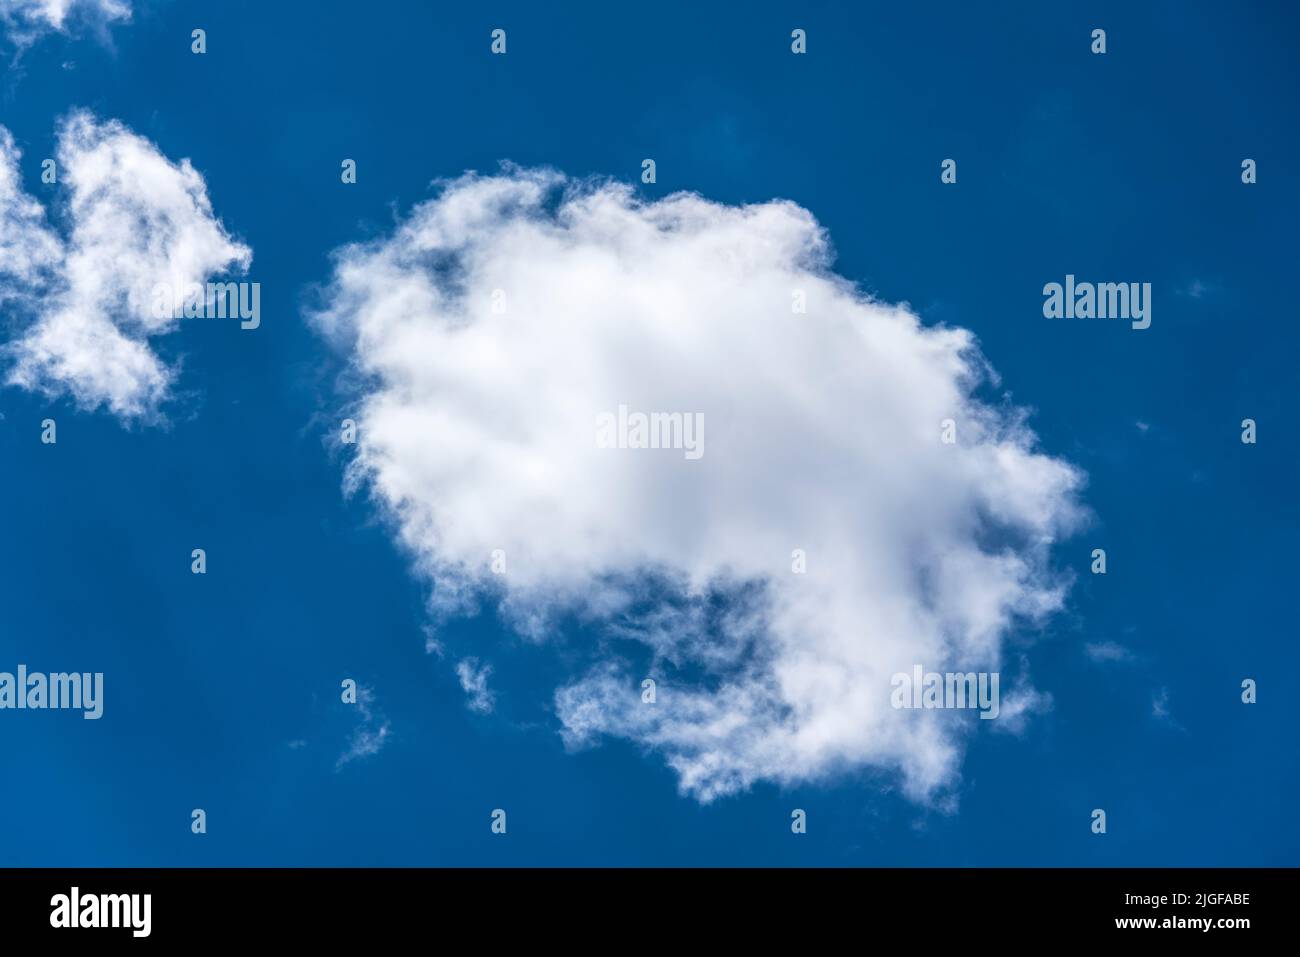 esponjosas nubes blancas de estratocúmulos en un claro cielo azul profundo en un día de verano Foto de stock